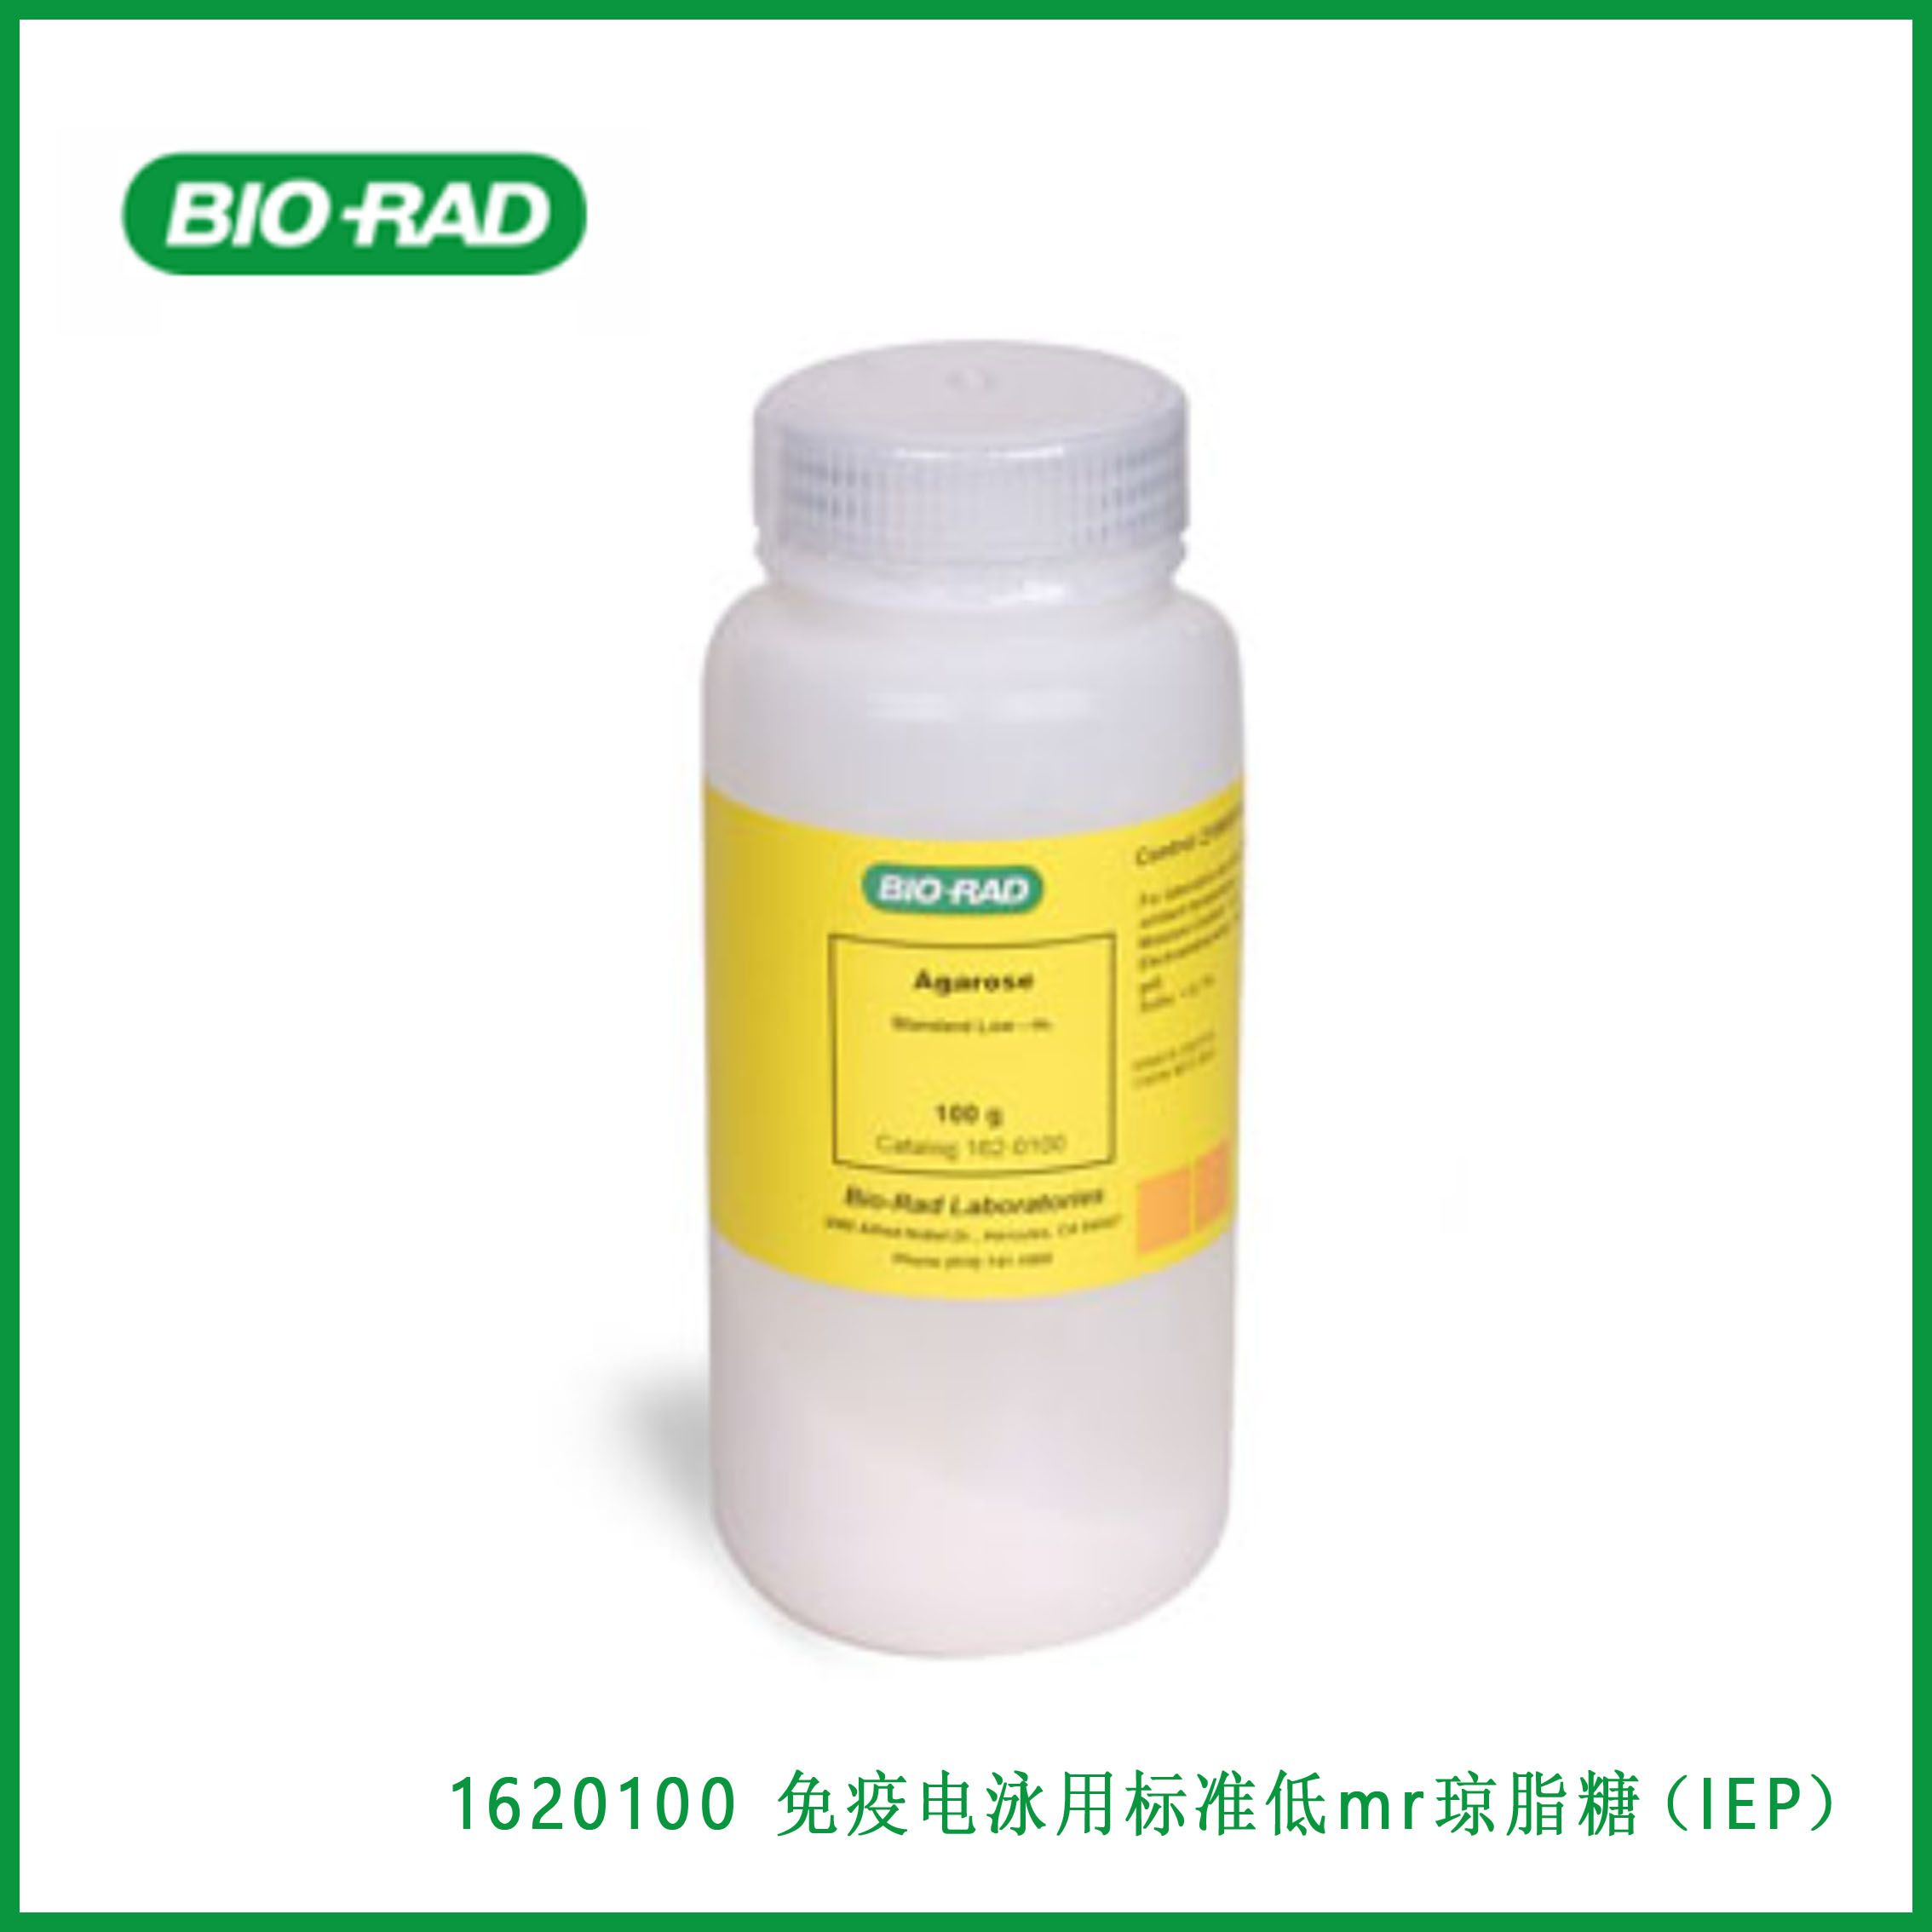 伯乐Bio-Rad1620100 Standard Low -mr Agarose for Immunoelectrophoresis (IEP)，免疫电泳用标准低mr琼脂糖（IEP），现货